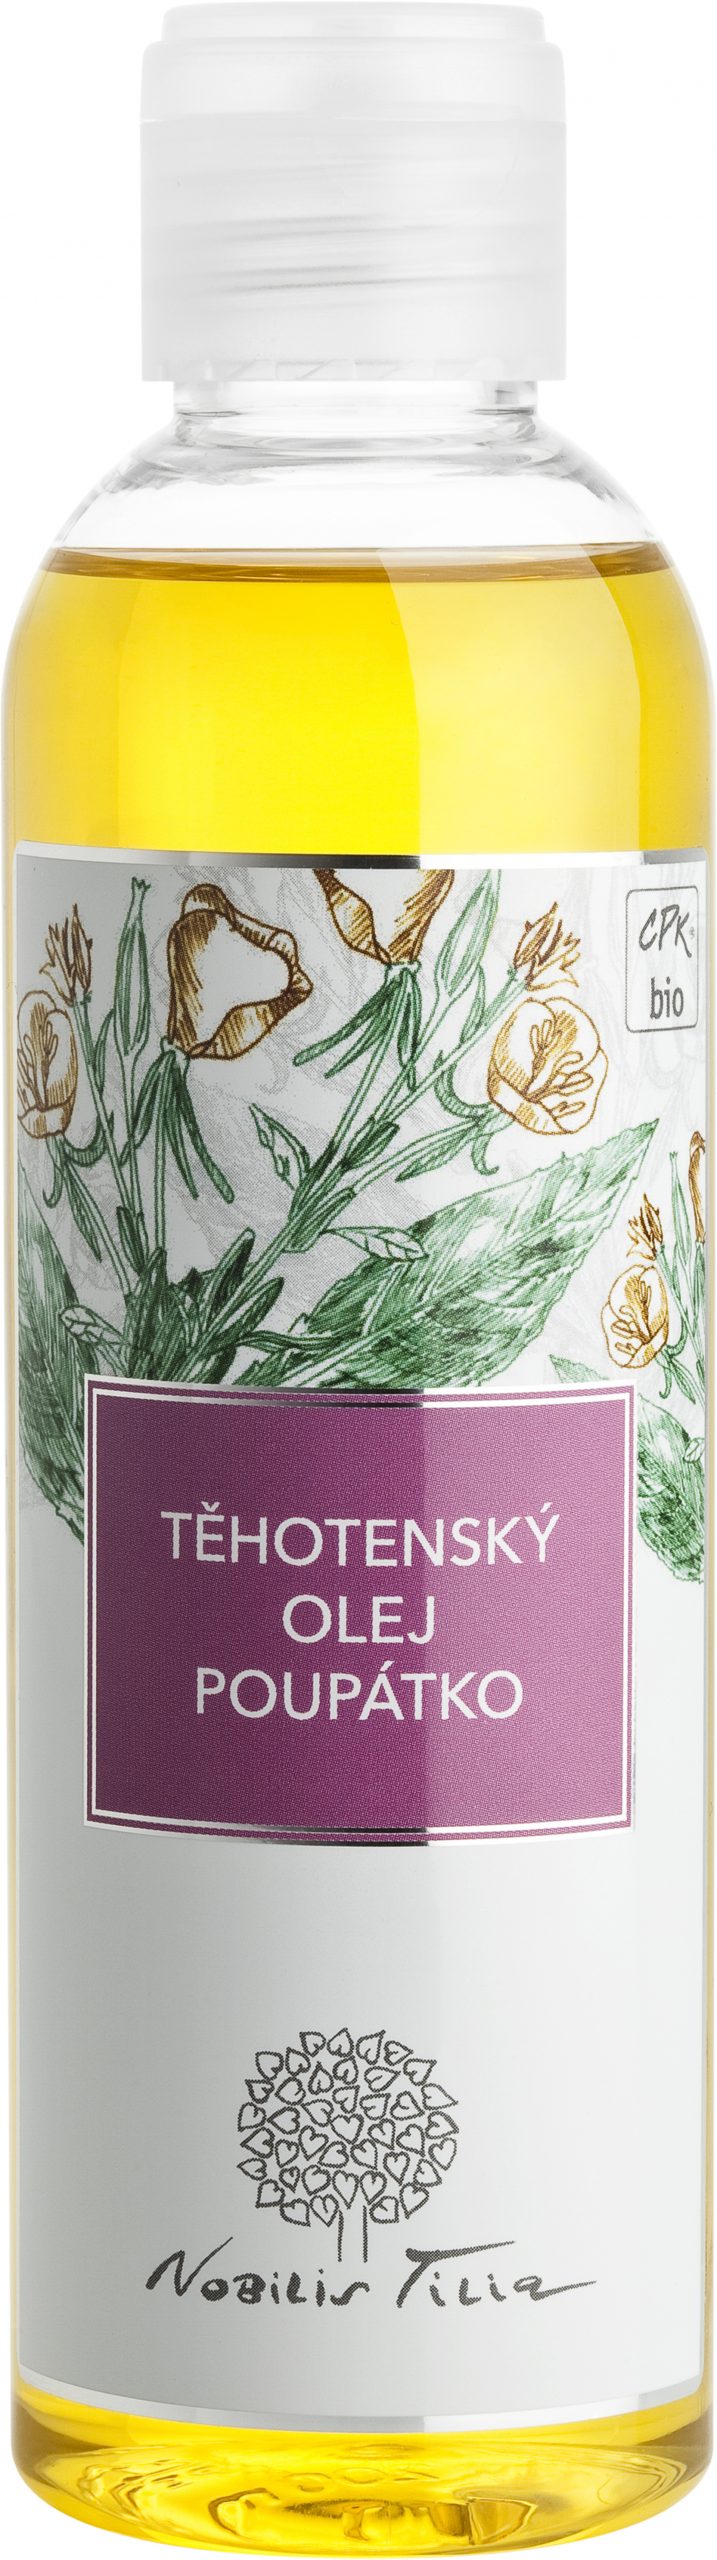 Nobilis Tilia Těhotenský olej Poupátko 200 ml